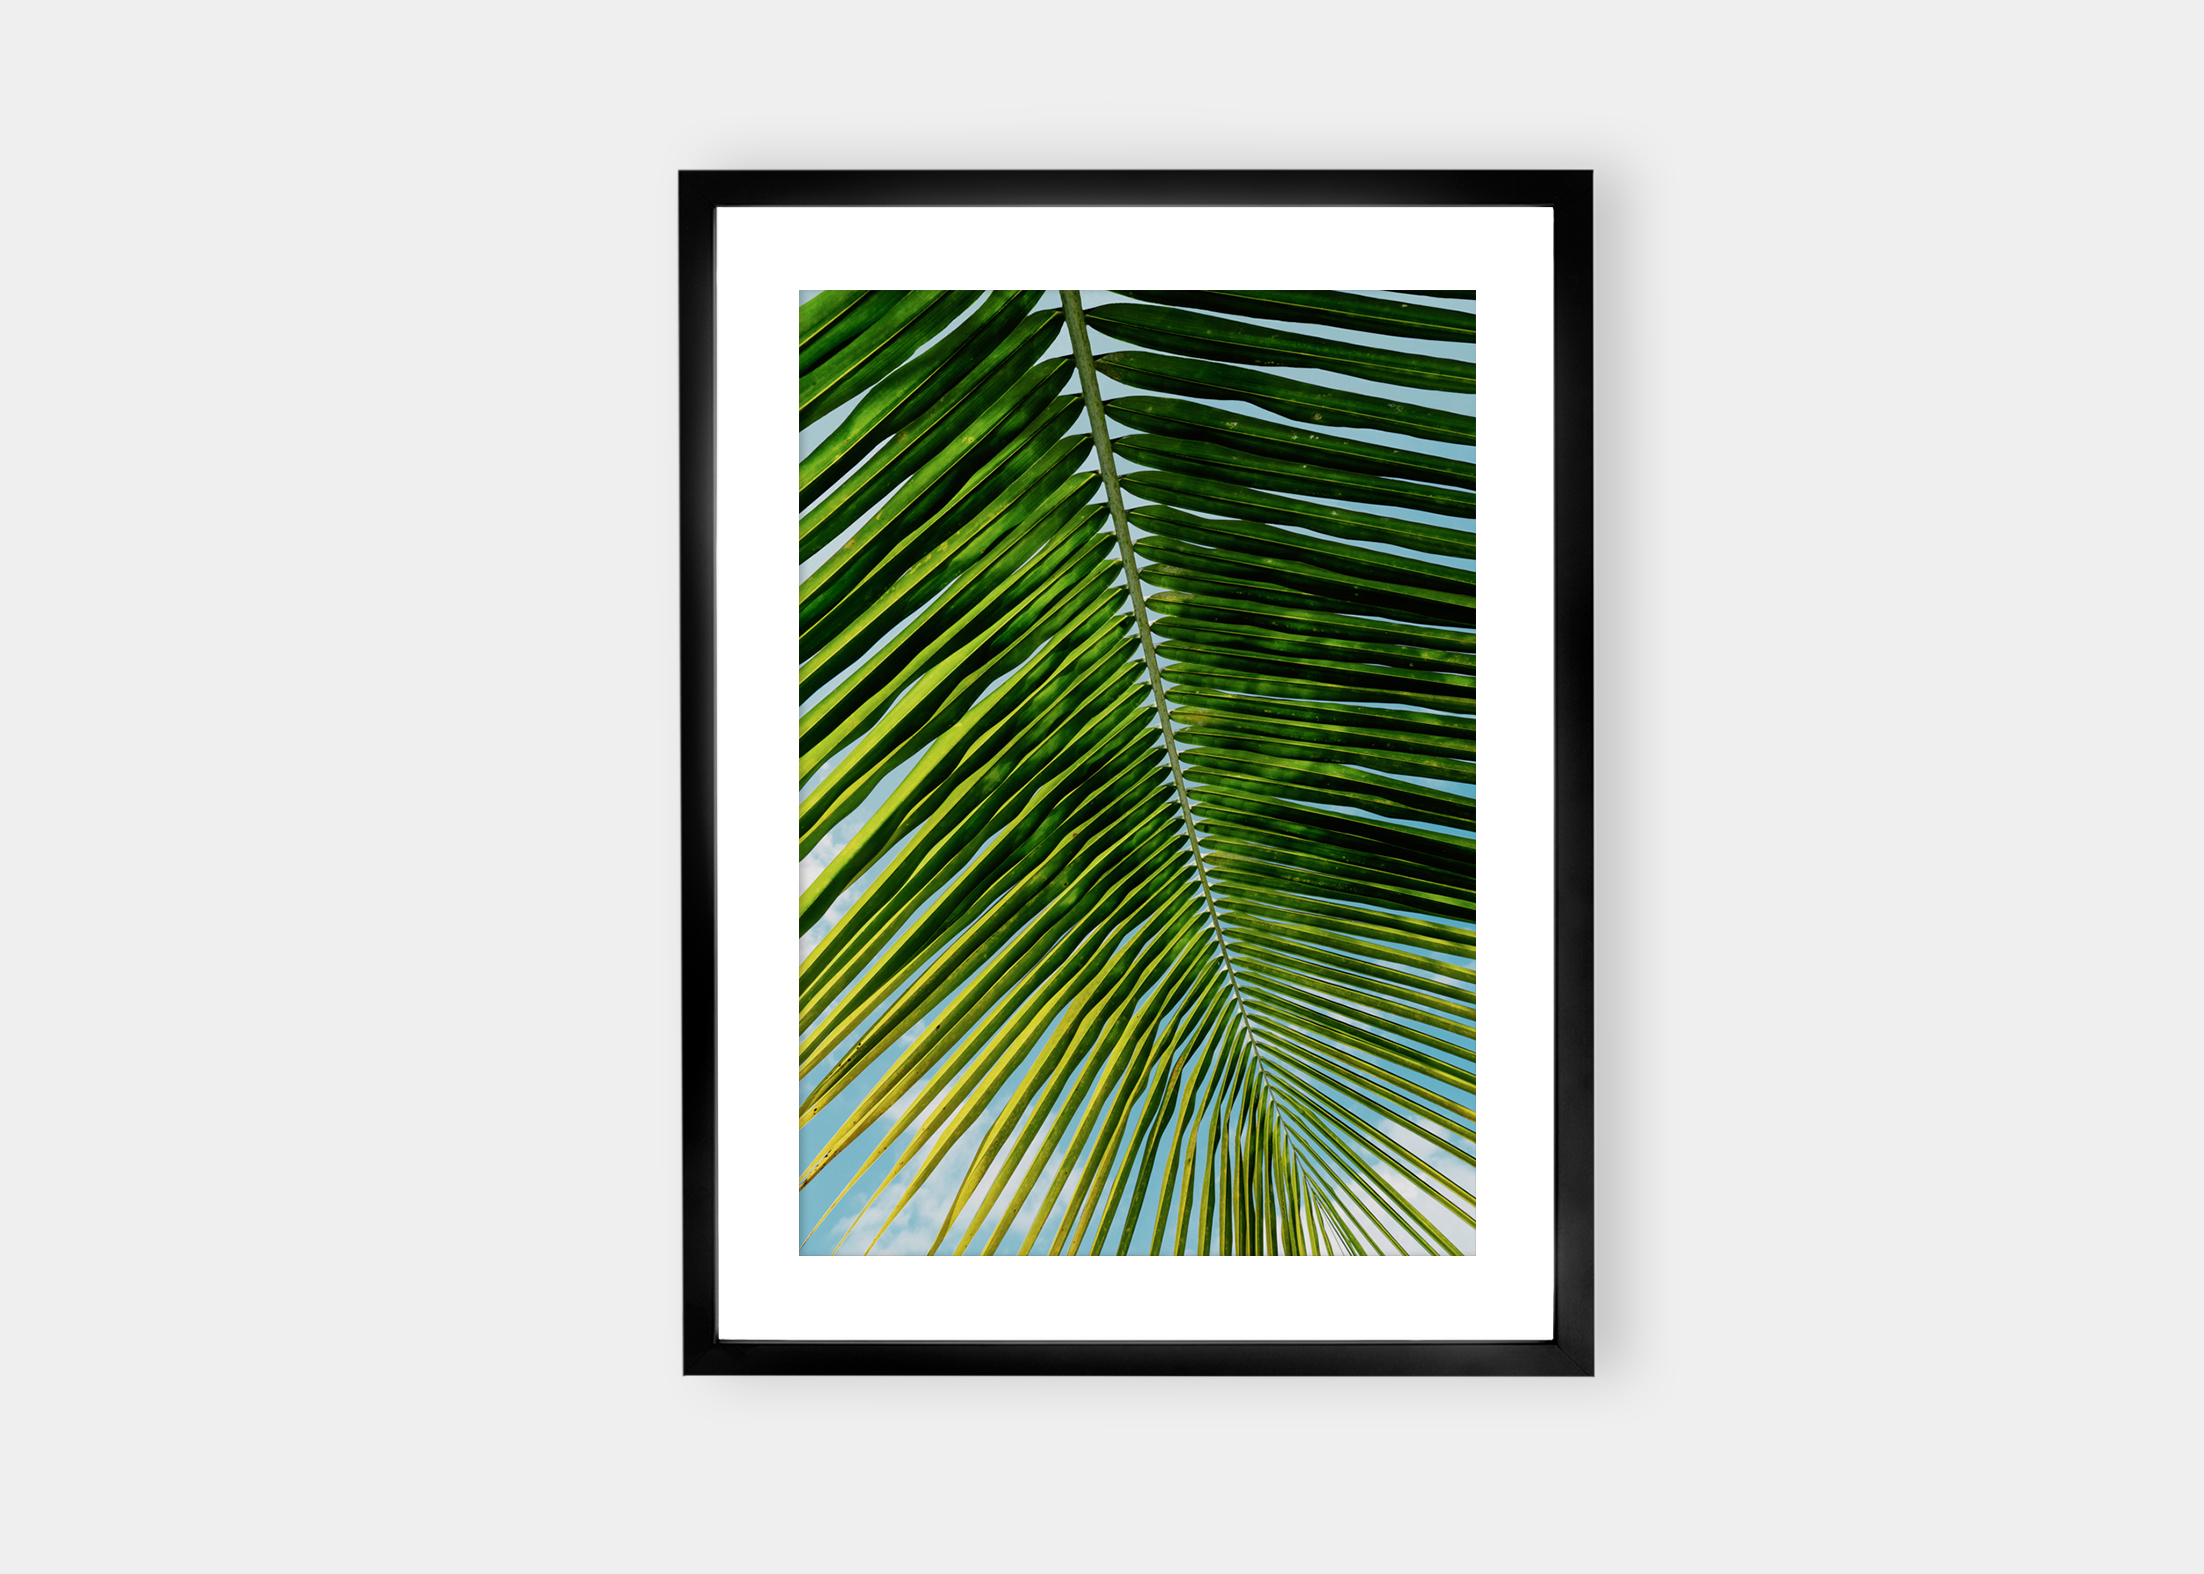 Calm Palm | Salg av Fine Art fotokunst på nett | Fotograf Stian Gregersen